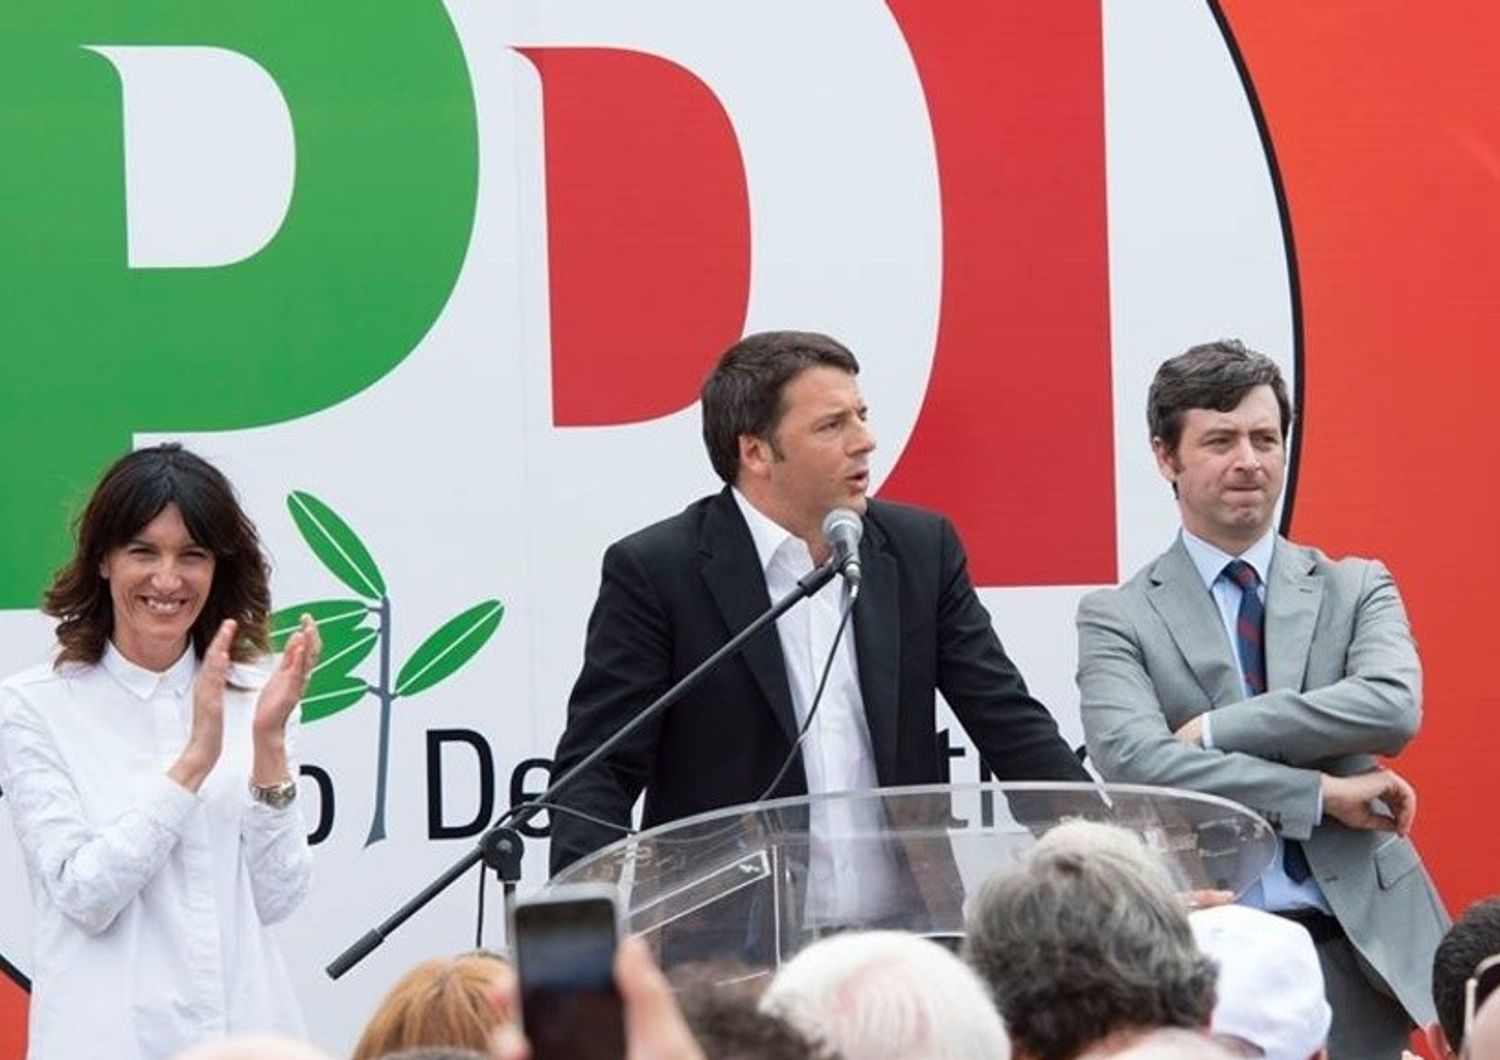 Regionali: Renzi, ultime ore migliori per prendere voti